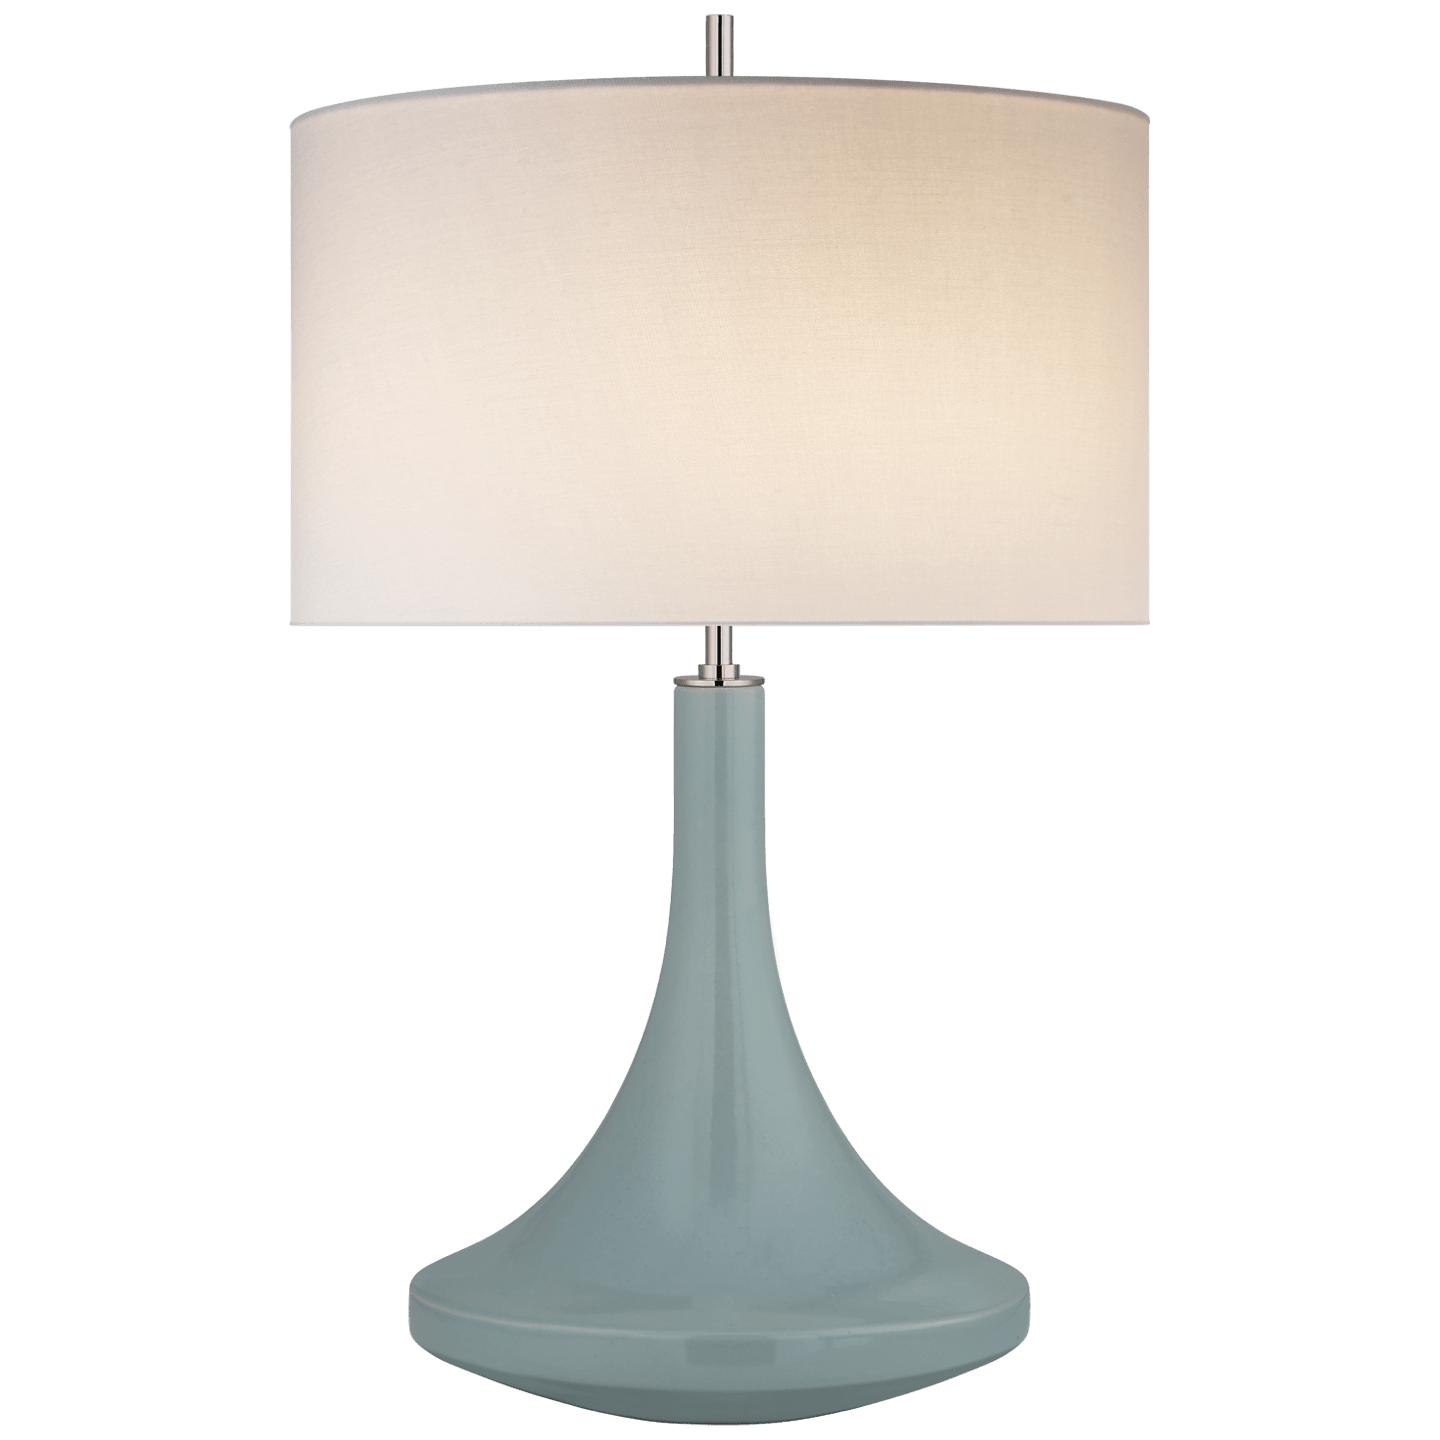 Купить Настольная лампа Minola Medium Table Lamp в интернет-магазине roooms.ru